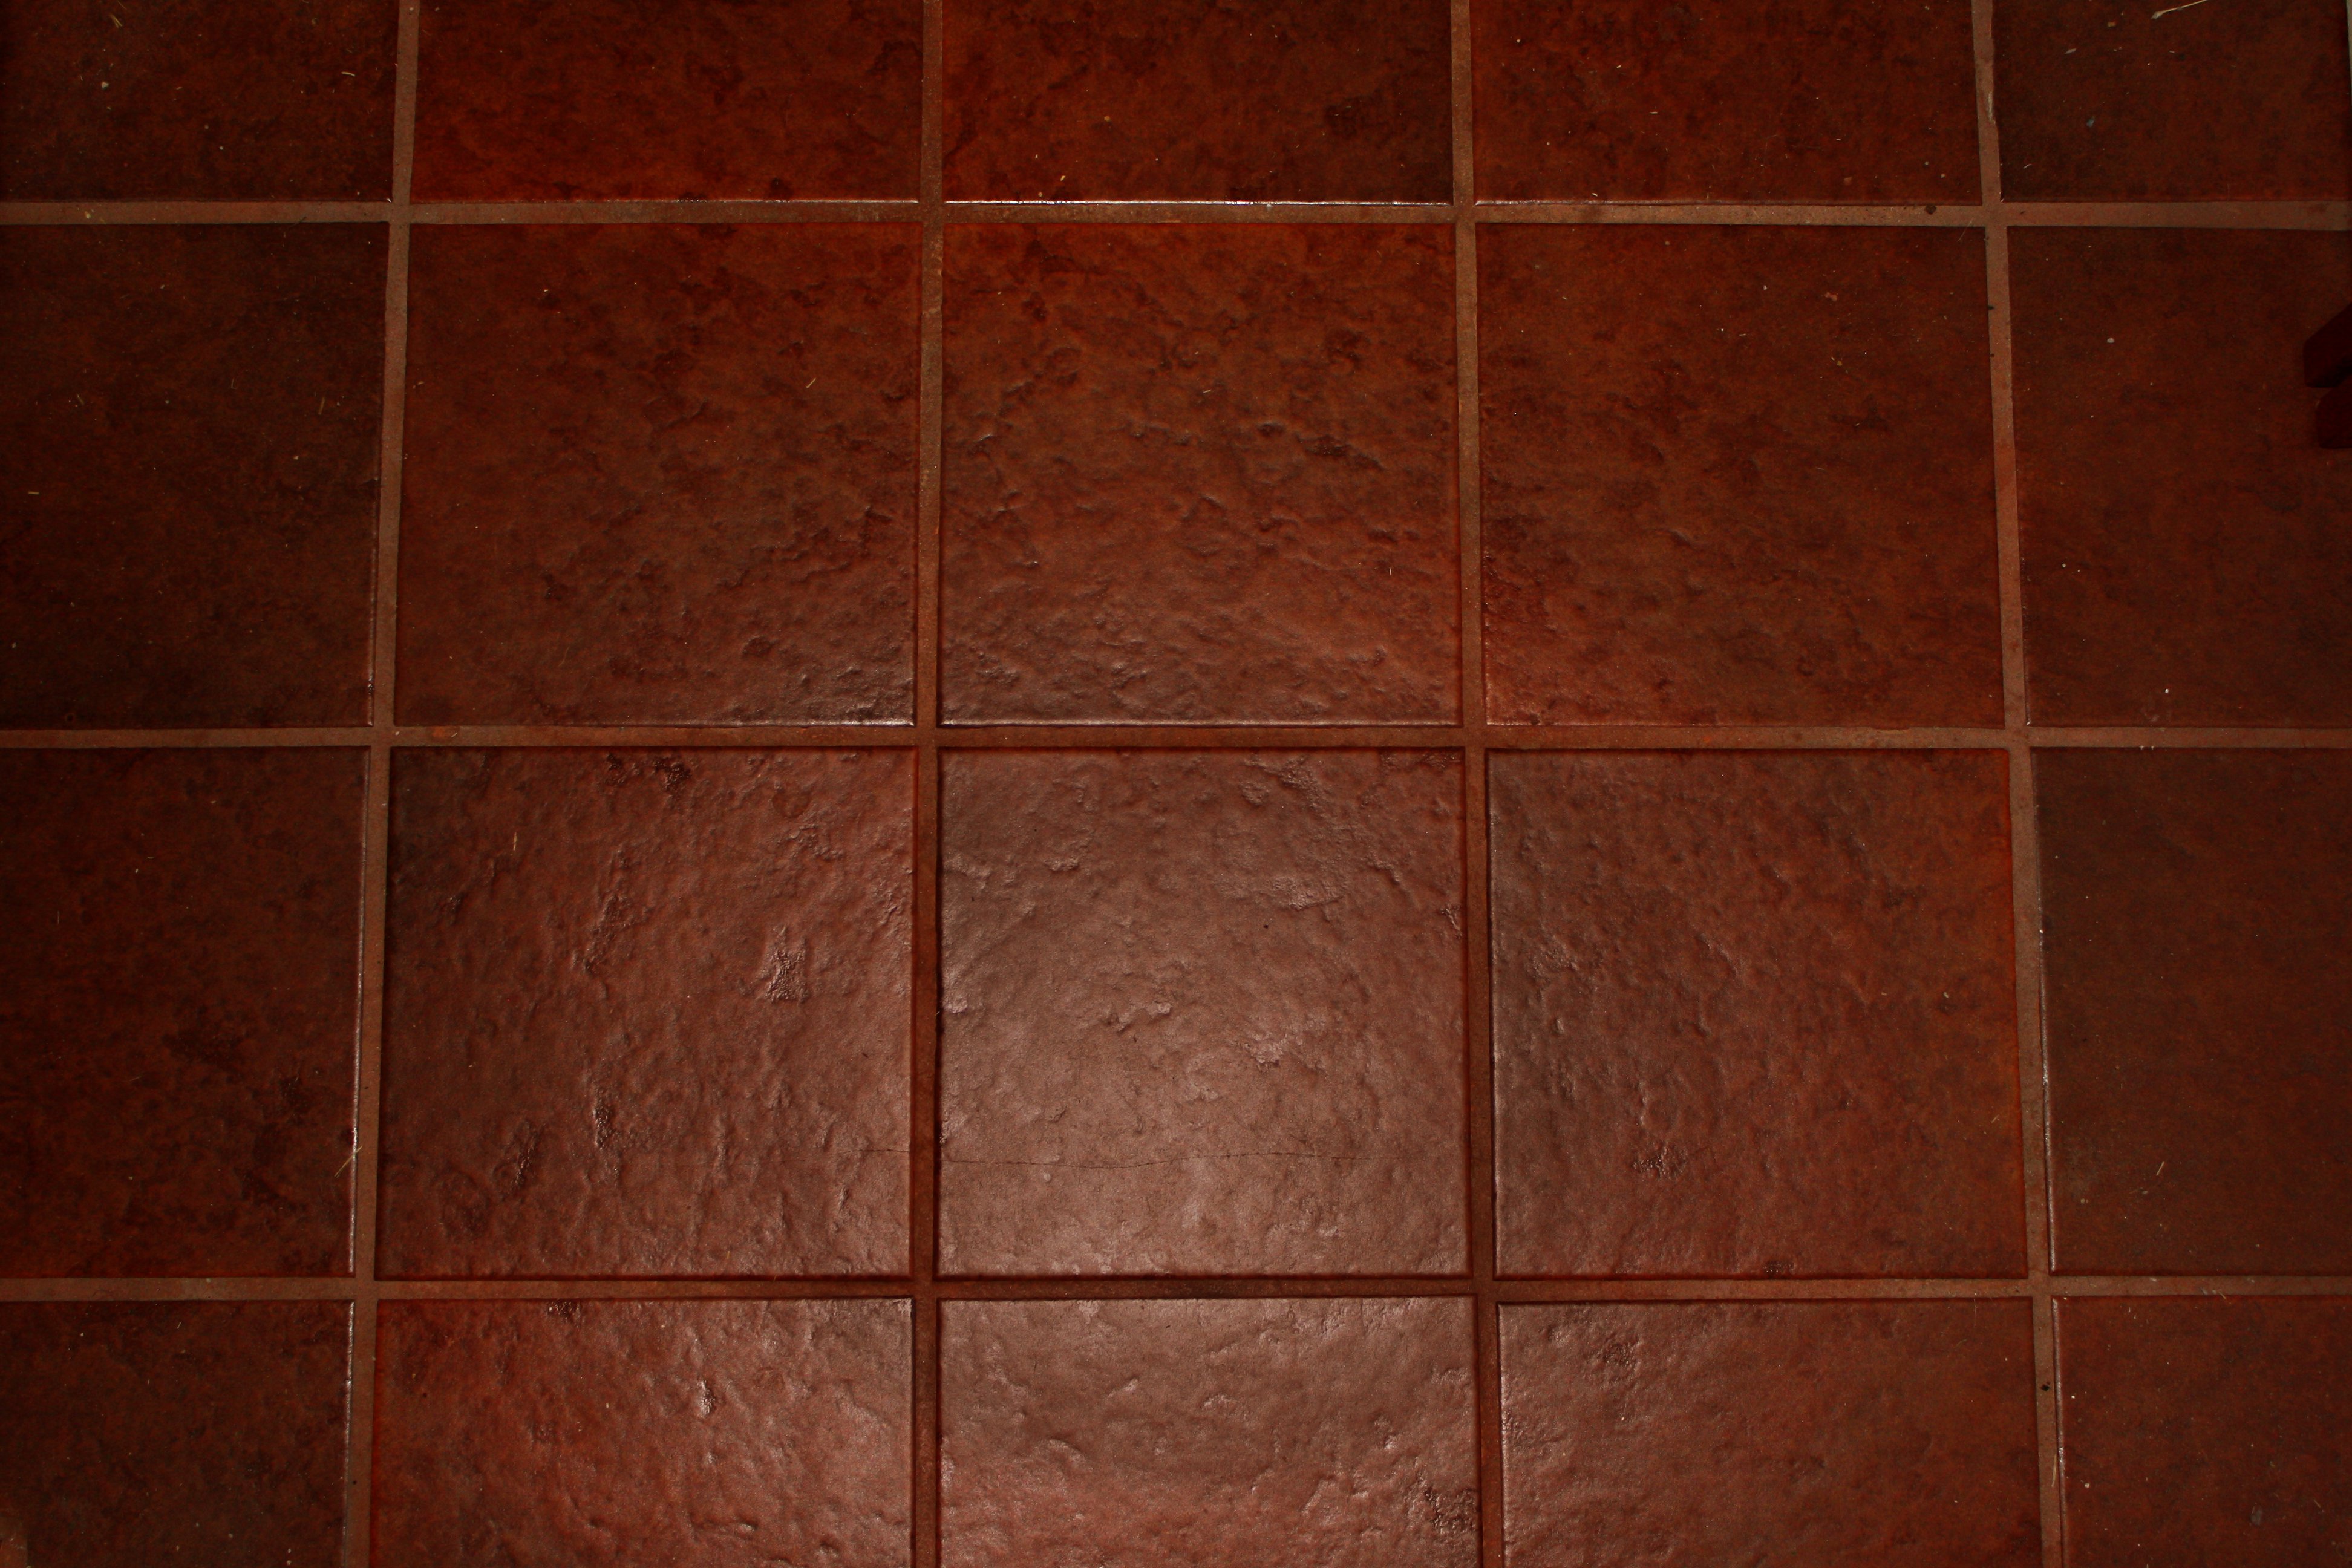 Brown Floor Tile Texture Picture | Free Photograph | Photos Public ...